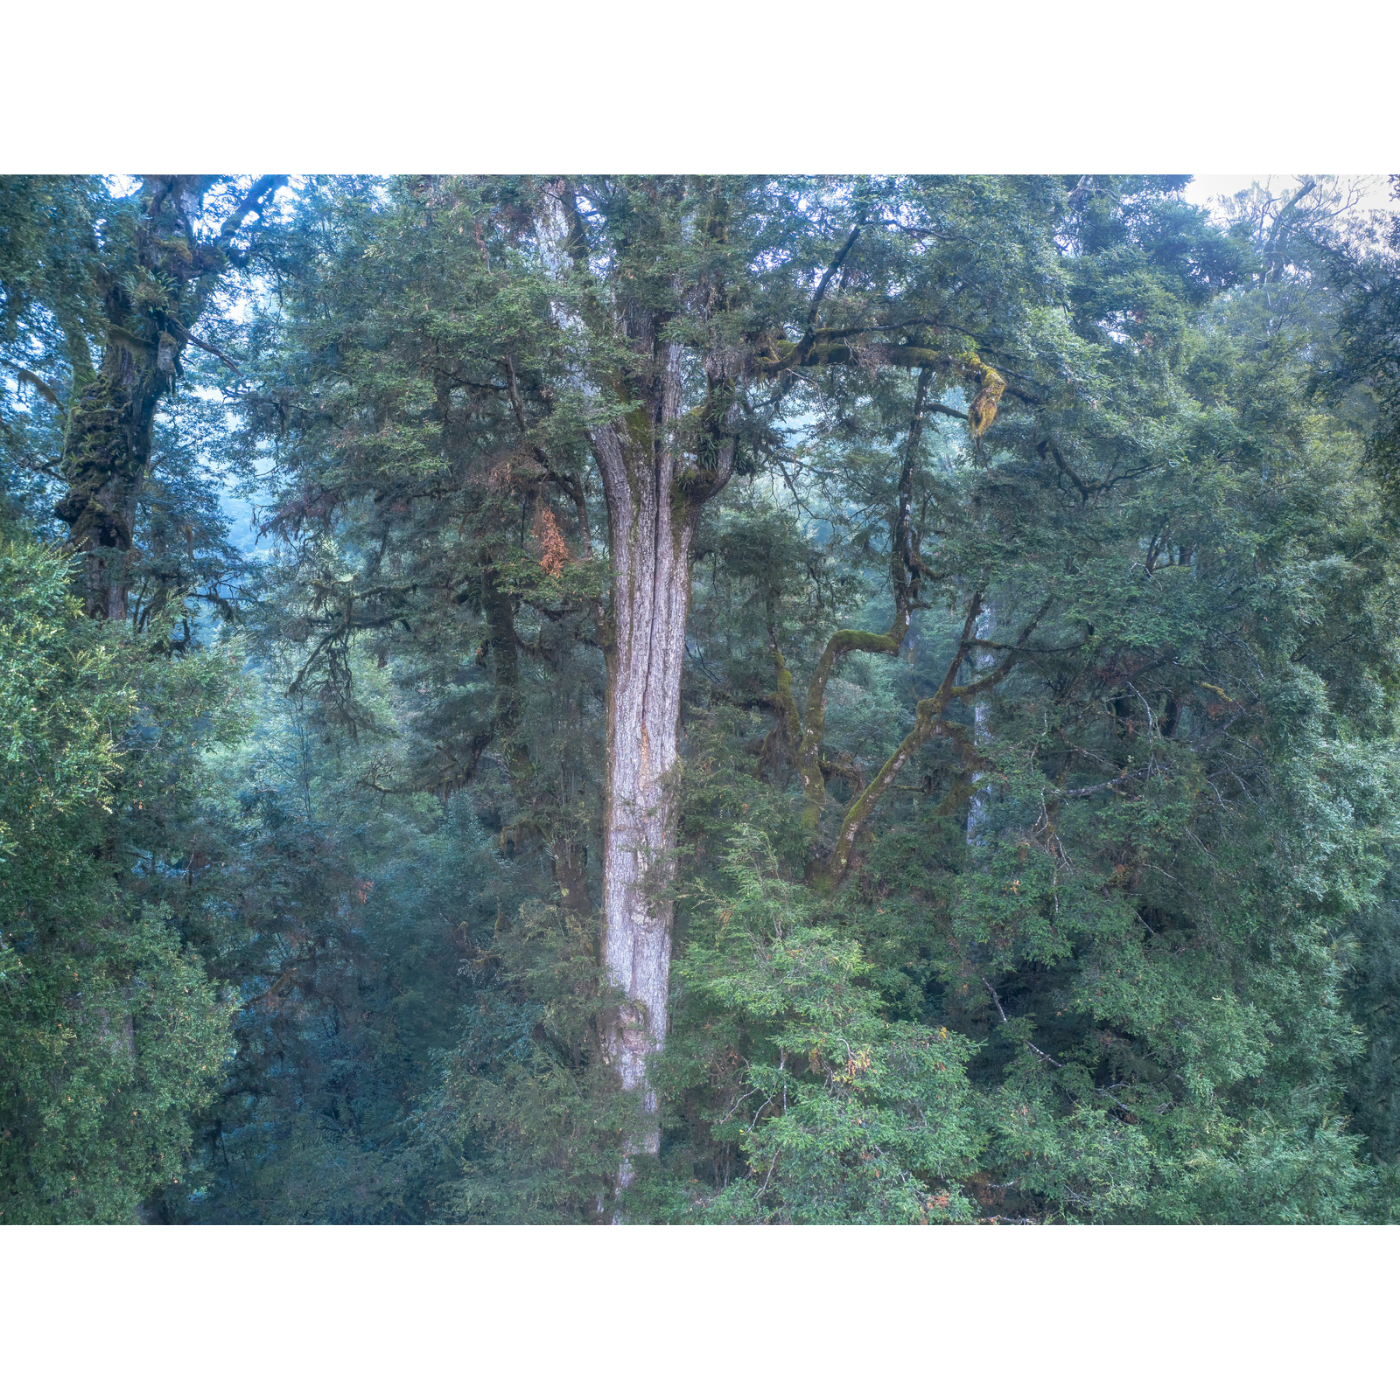 Rob Blakers - Ancient Rainforest, McKimmie Creek, takayna 2